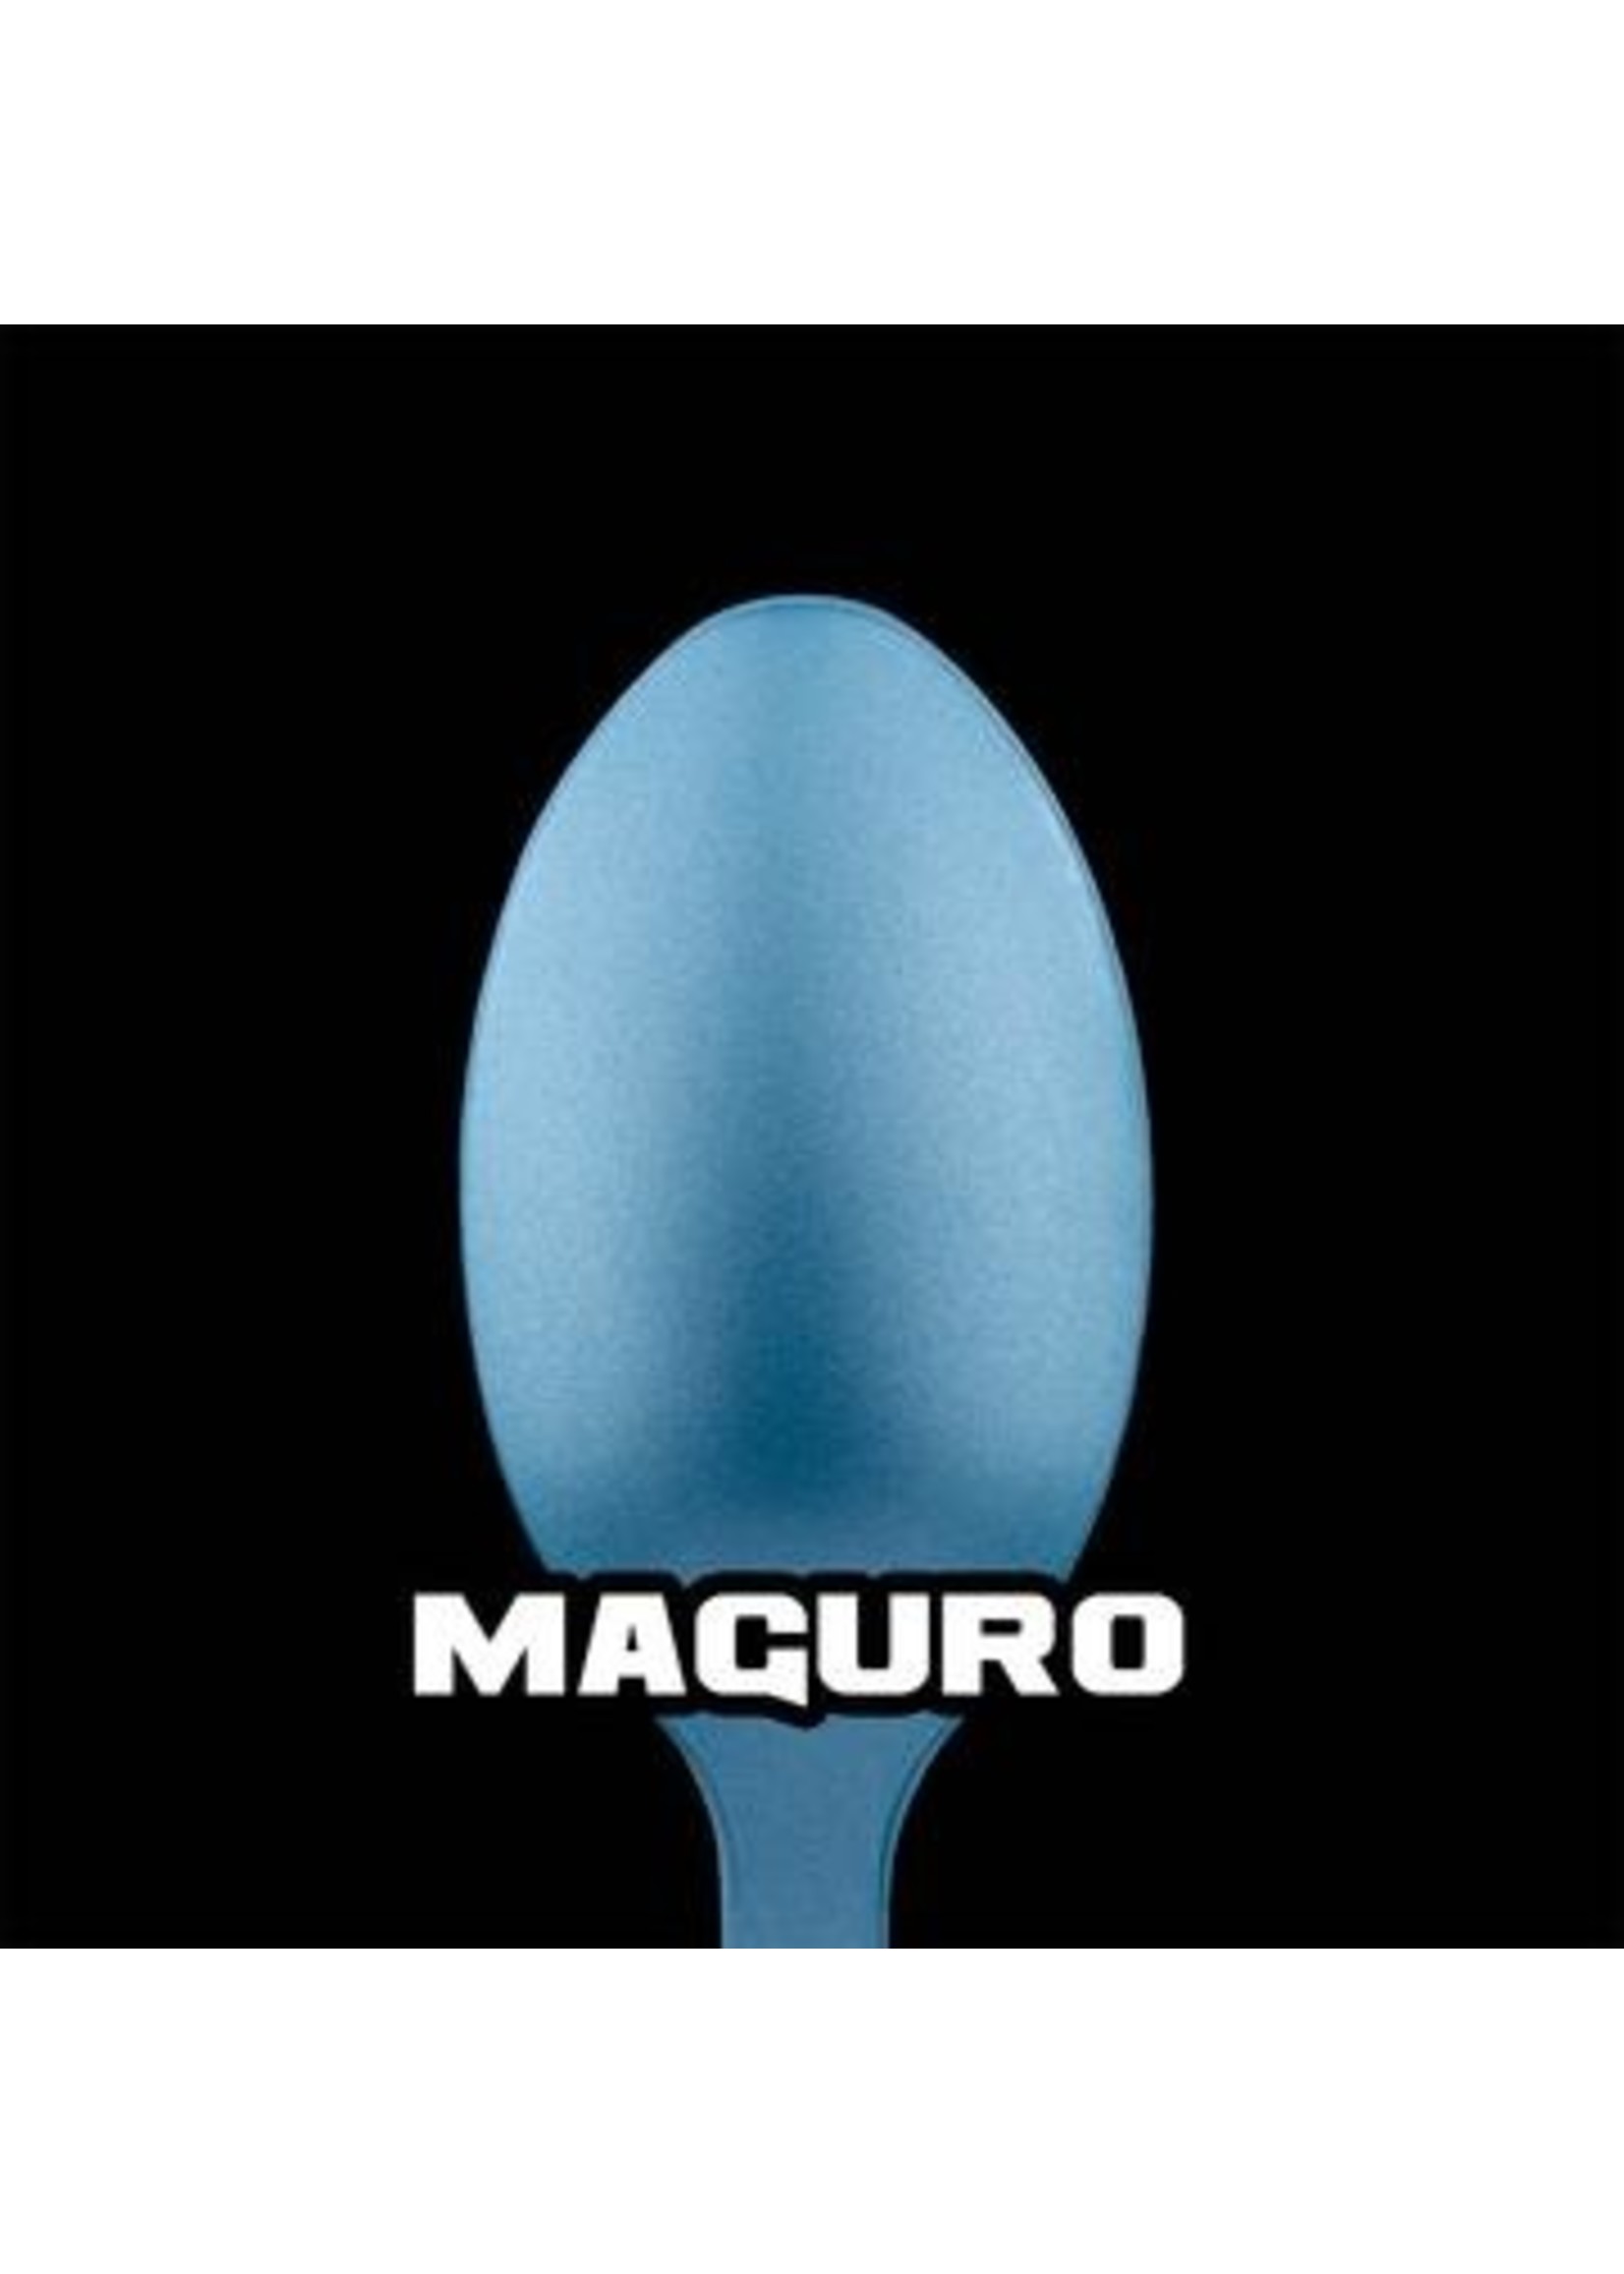 Turbo Dork Maguro Metallic Acrylic Paint - 20ml Bottle